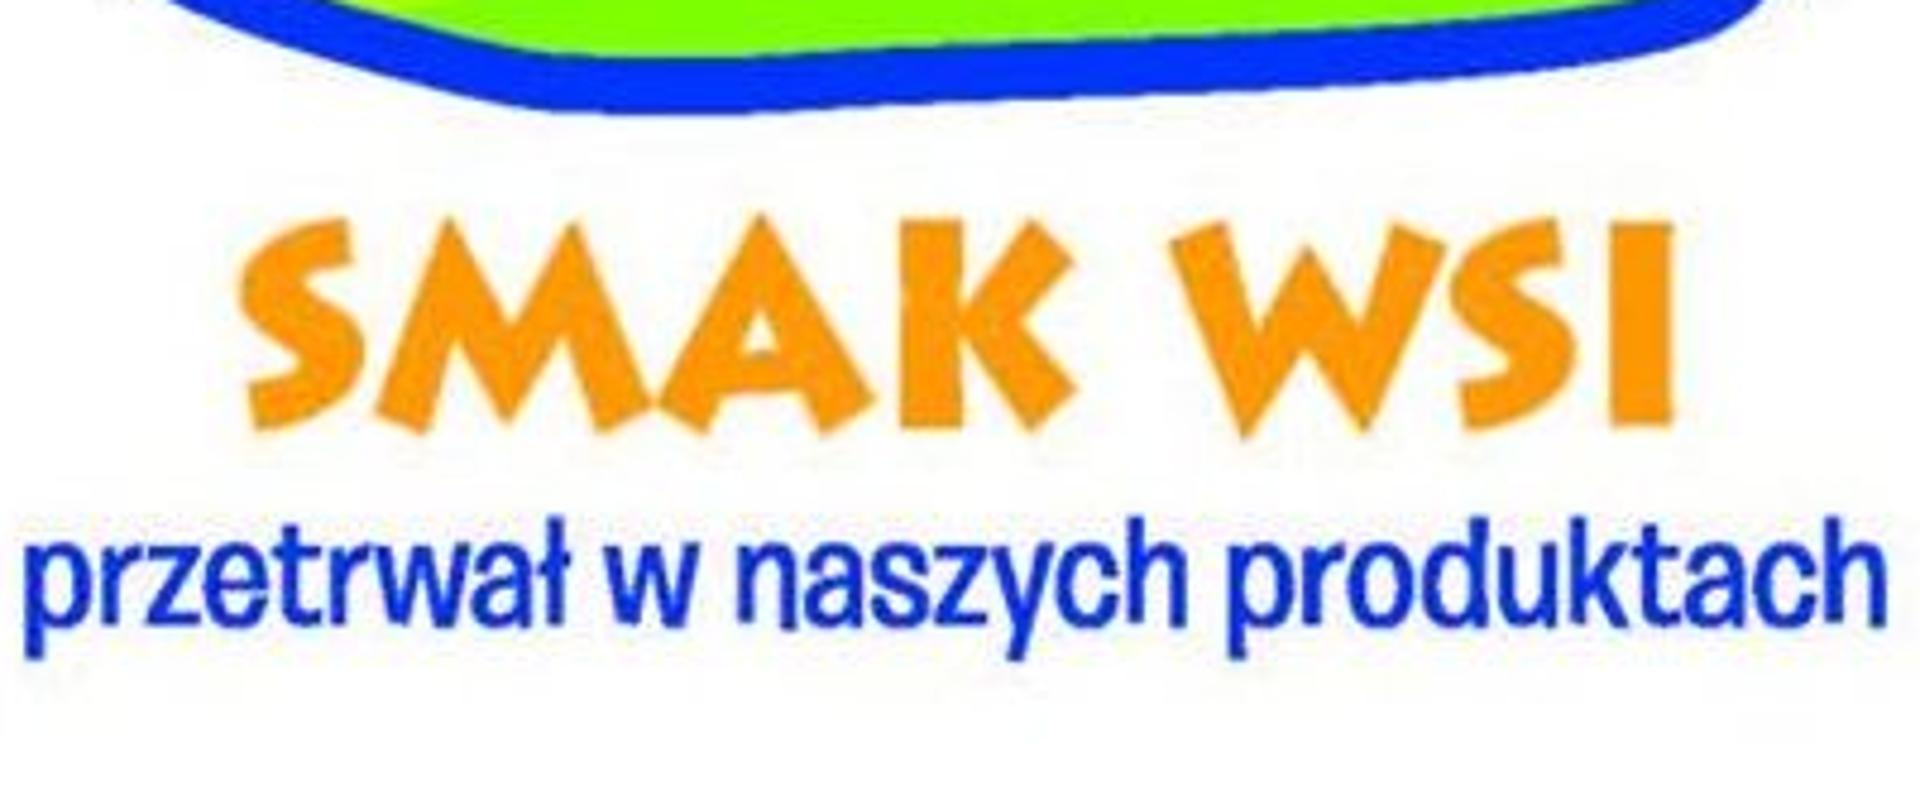 "SMAK WSI przetrwał w naszych produktach". Kwadratowe logo, na którym widać słońce, pola i niebo. Wszystko jest w niebieskiej ramce.